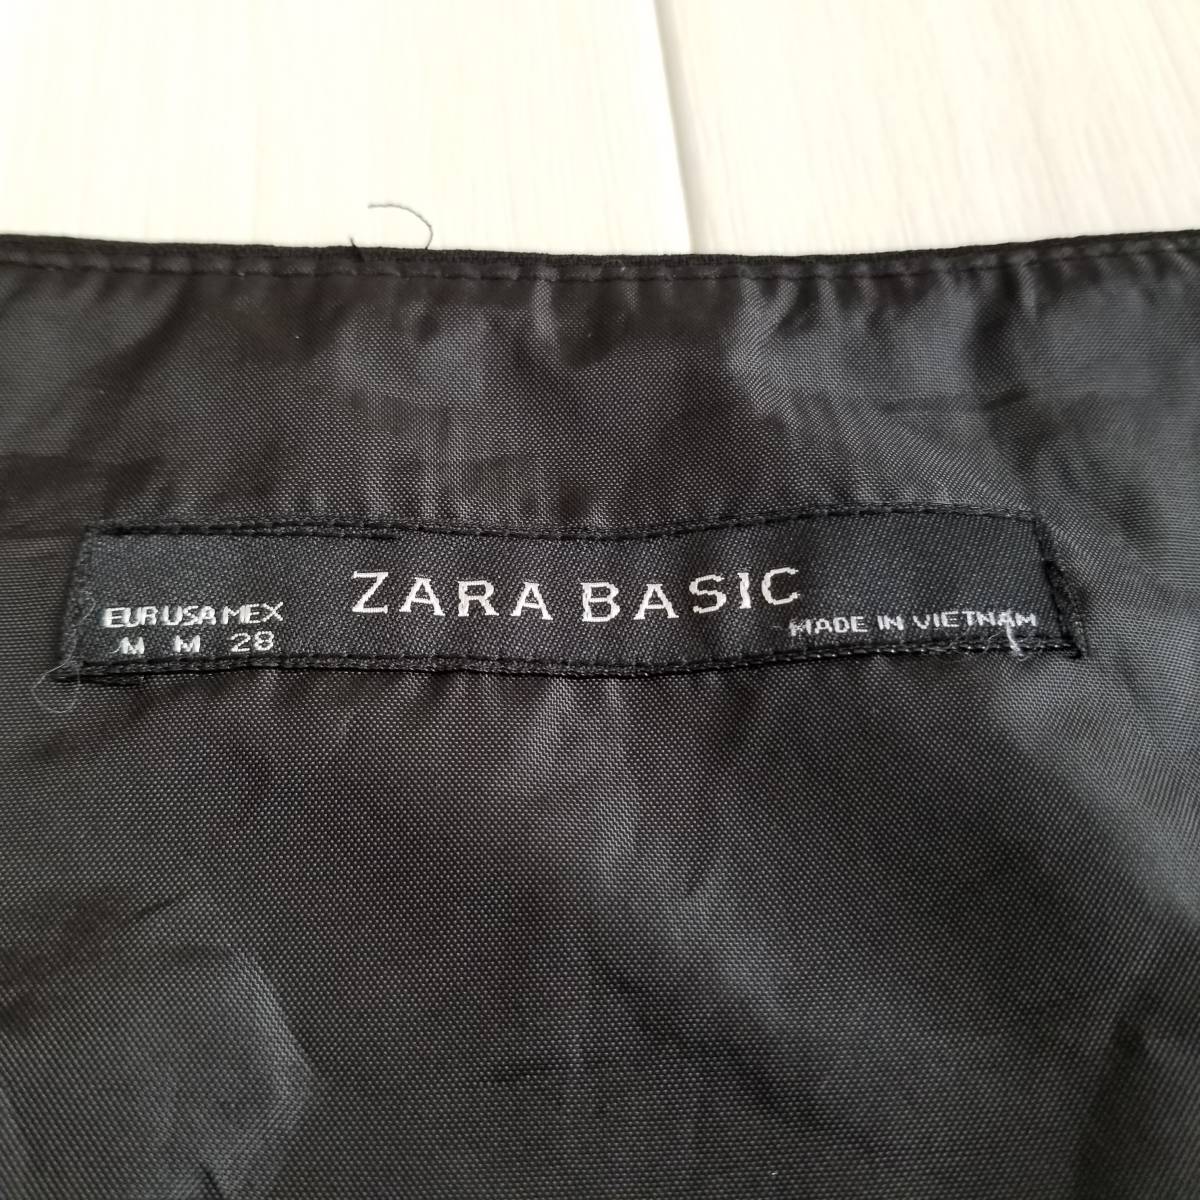 ZARA BASIC ザラ ベーシック ブラック スカート 可憐 フェミニン フレア ボトムス ３段 黒 ポリエステル100% 春のデート服 J28_画像4